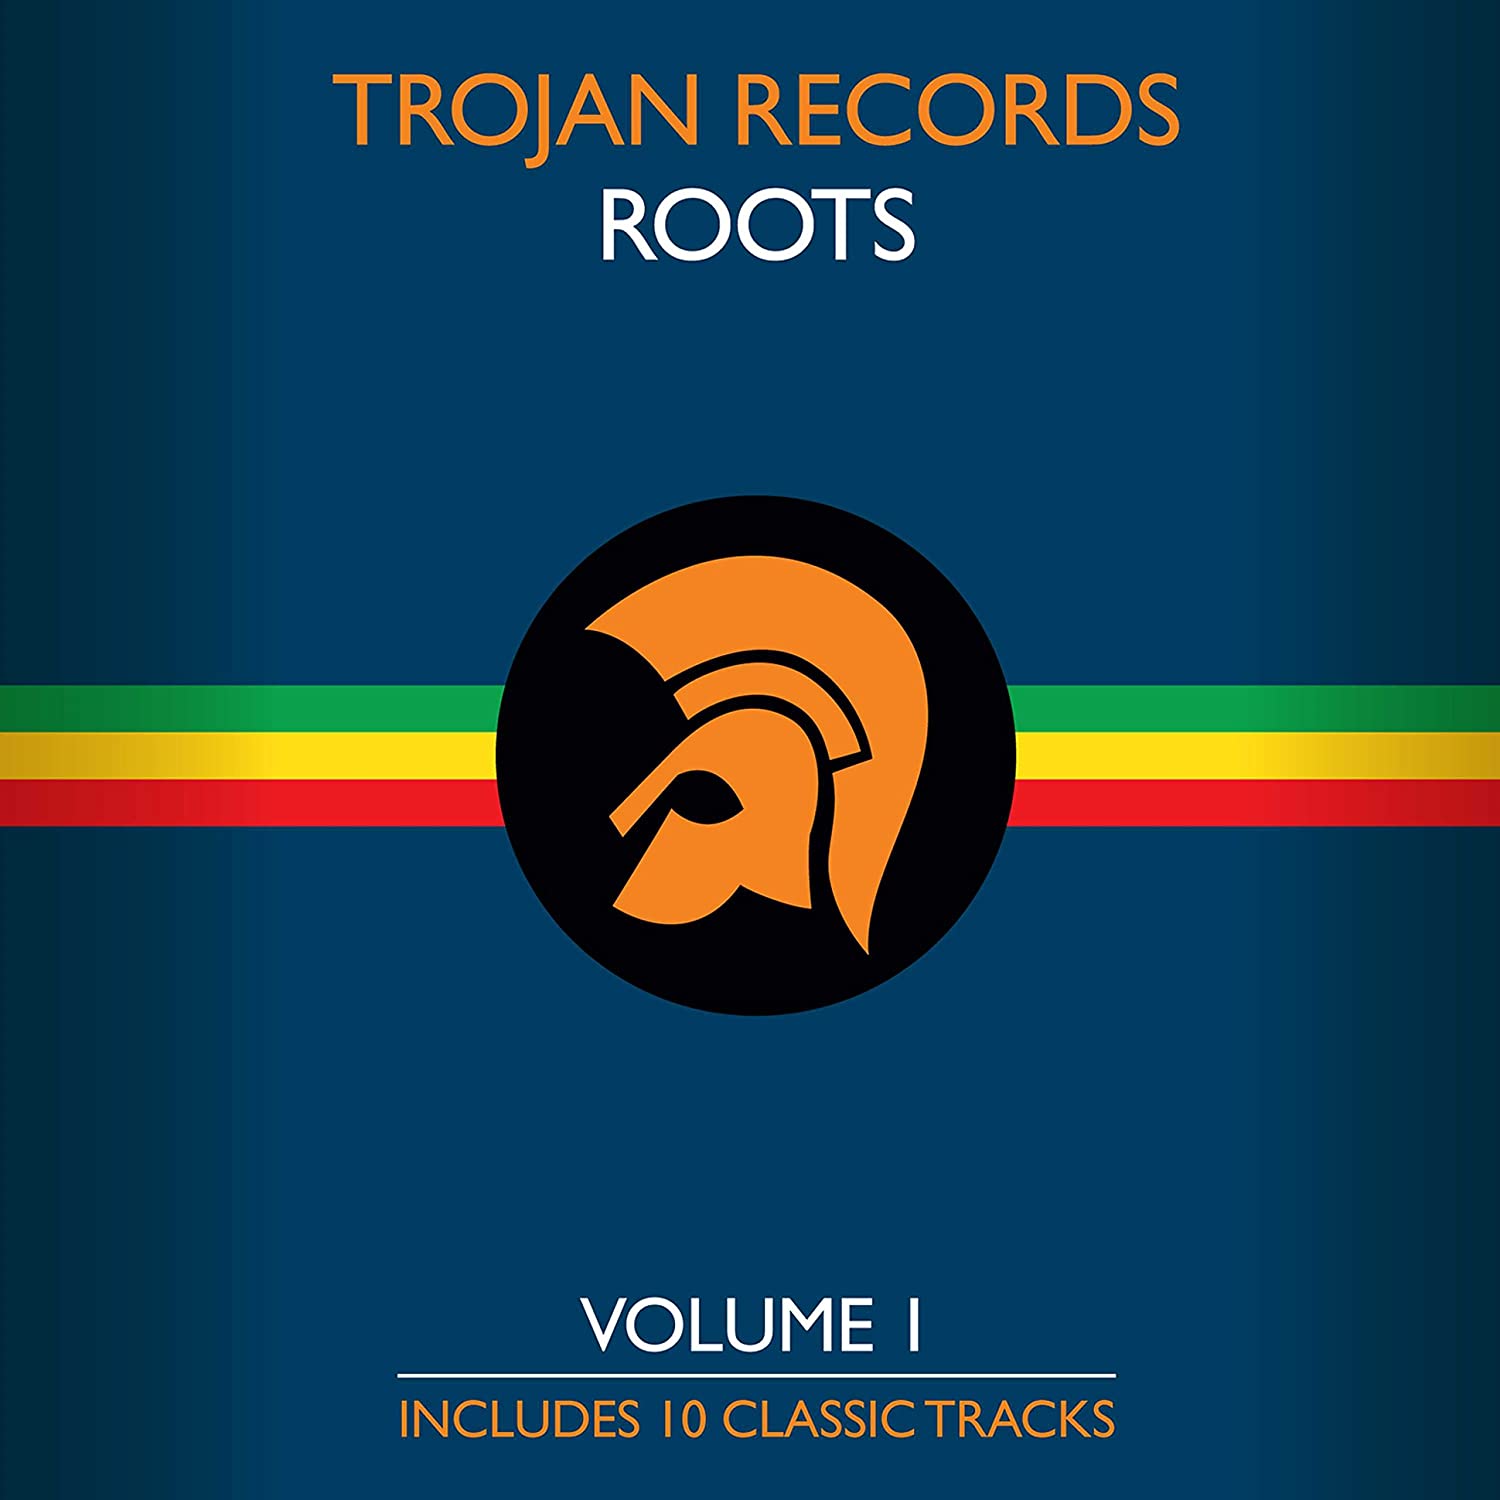 V/A - TROJAN RECORDS ROOTS- VOL. 1 Vinyl LP